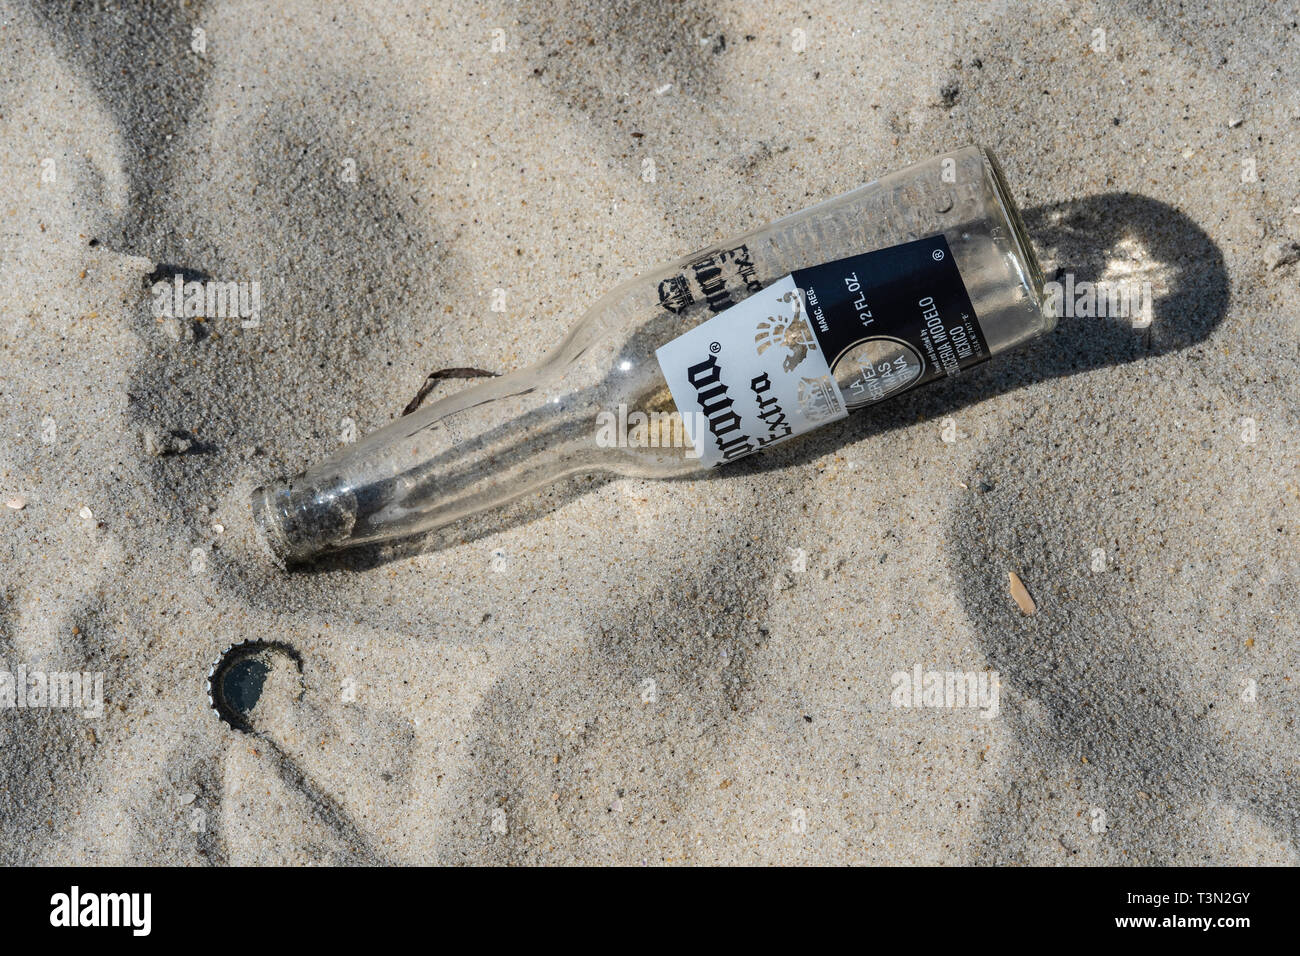 Wantaugh, NY - 21 août 2018 : Corona vide bouteille supplémentaire et le chapeau est abandonné dans le sable sur la plage à Jones Beach. Banque D'Images